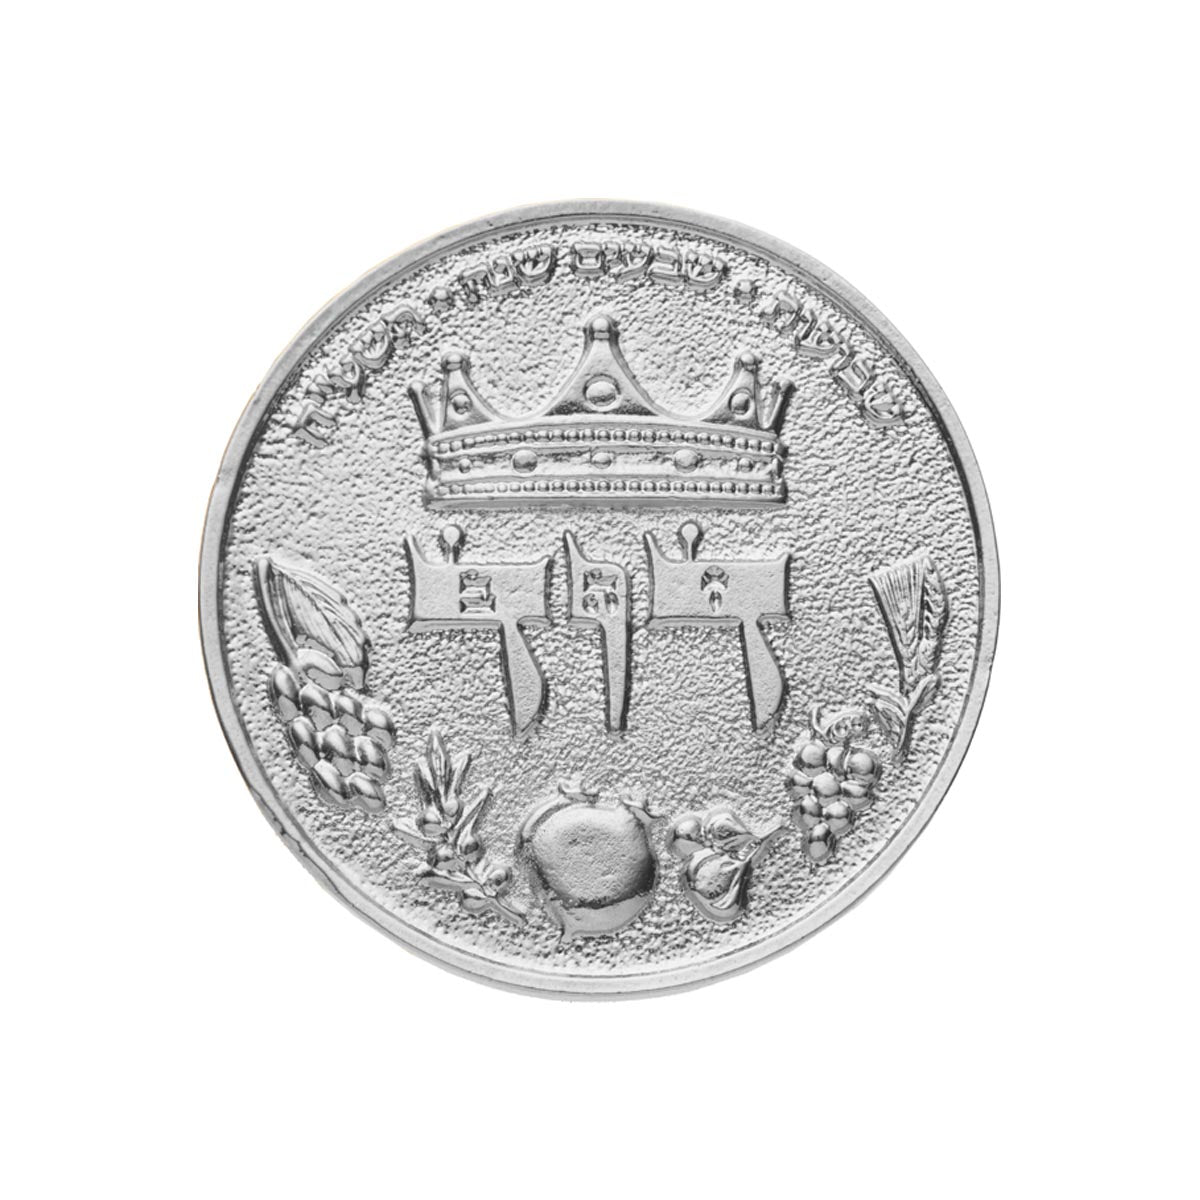 King David Half Shekel Coin (7904561496214)